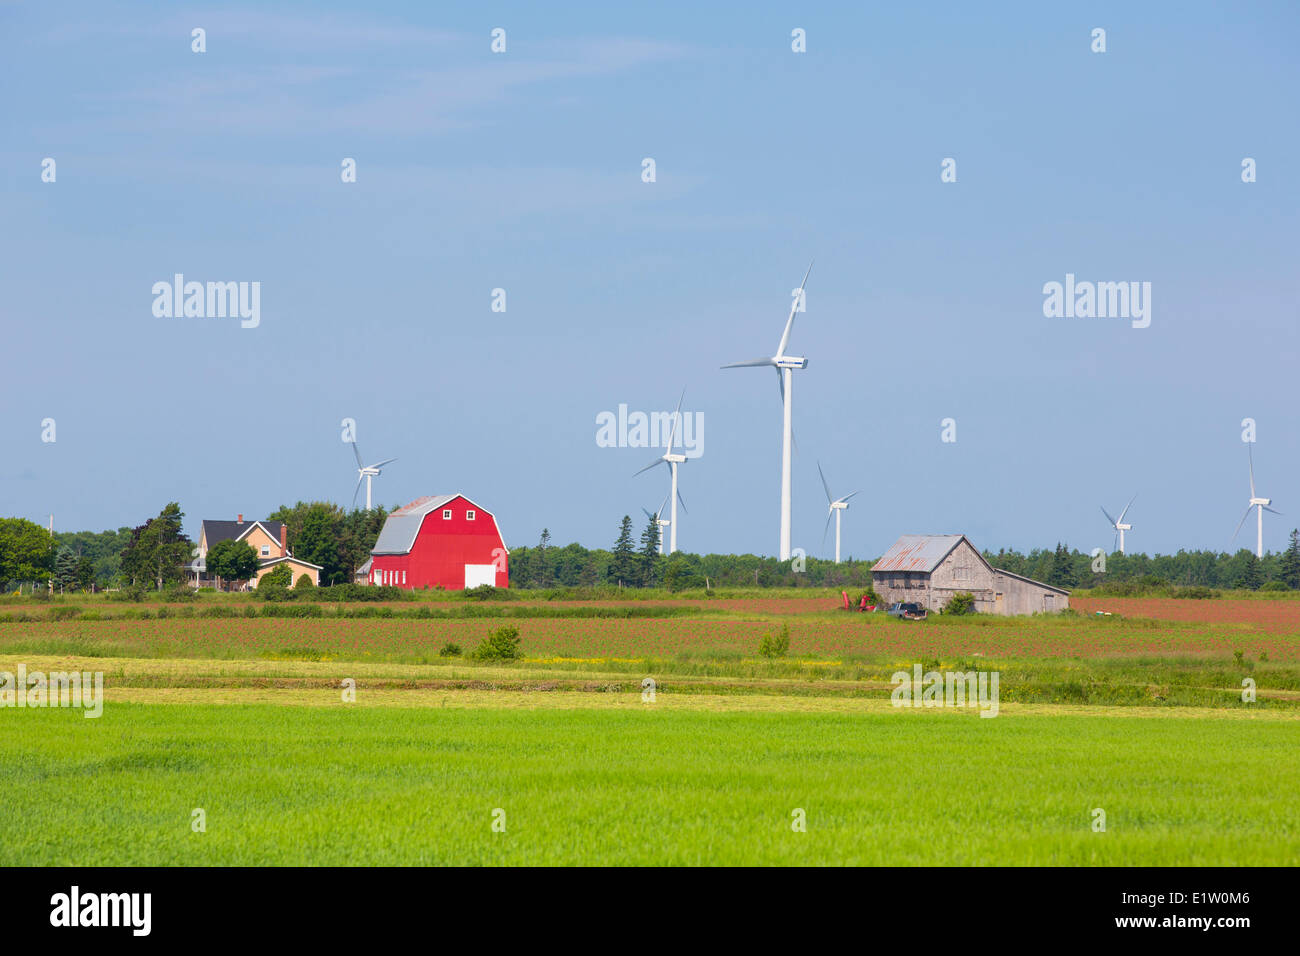 Farm and wind turbines, O' Leary, Prince Edward Island, Canada Stock Photo